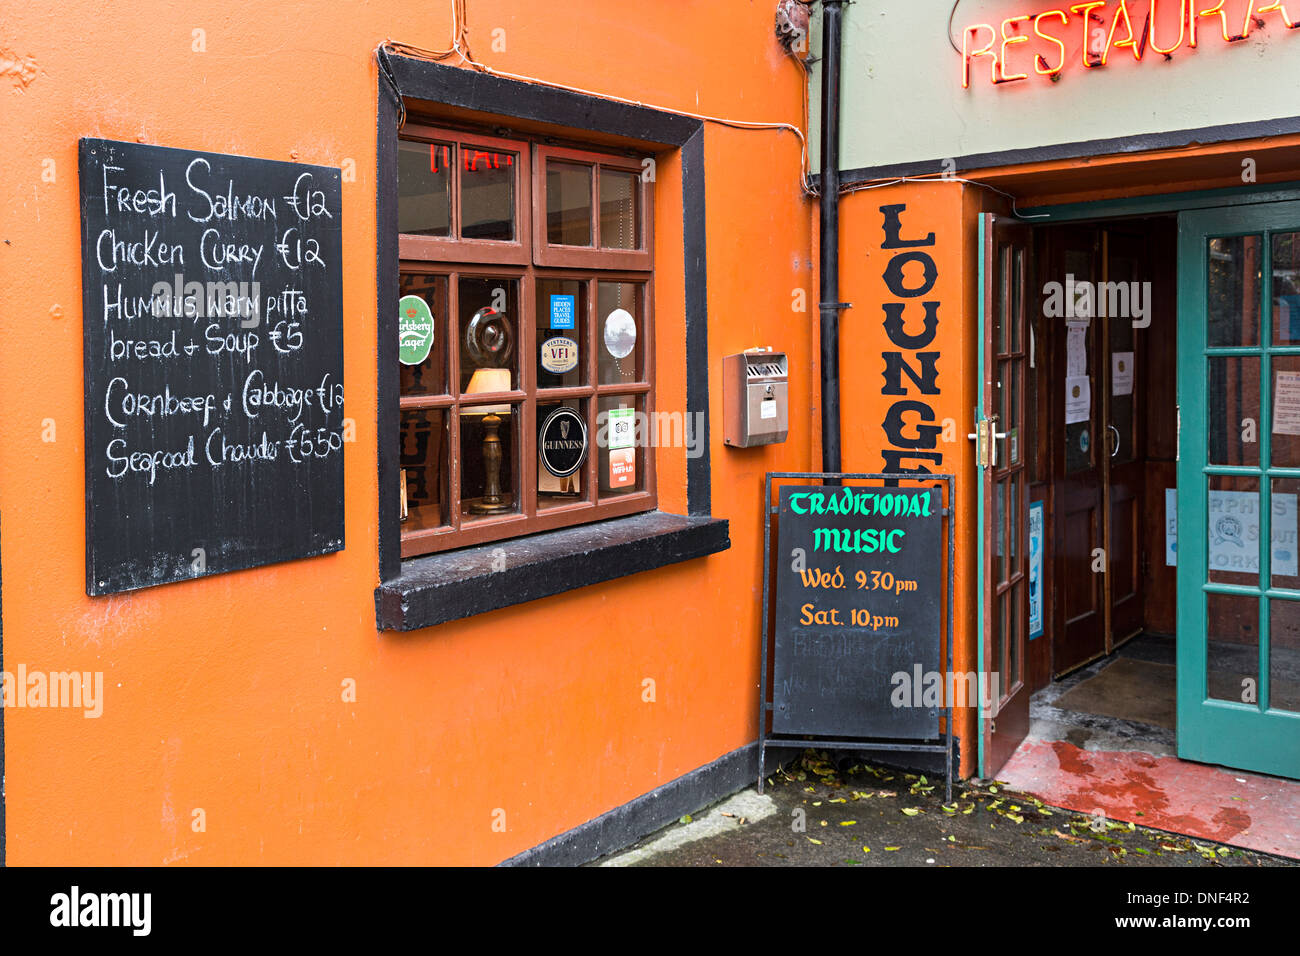 Panneaux pour la musique live et menu à l'extérieur de bar et restaurant, Corofin, comté de Clare, Irlande Banque D'Images